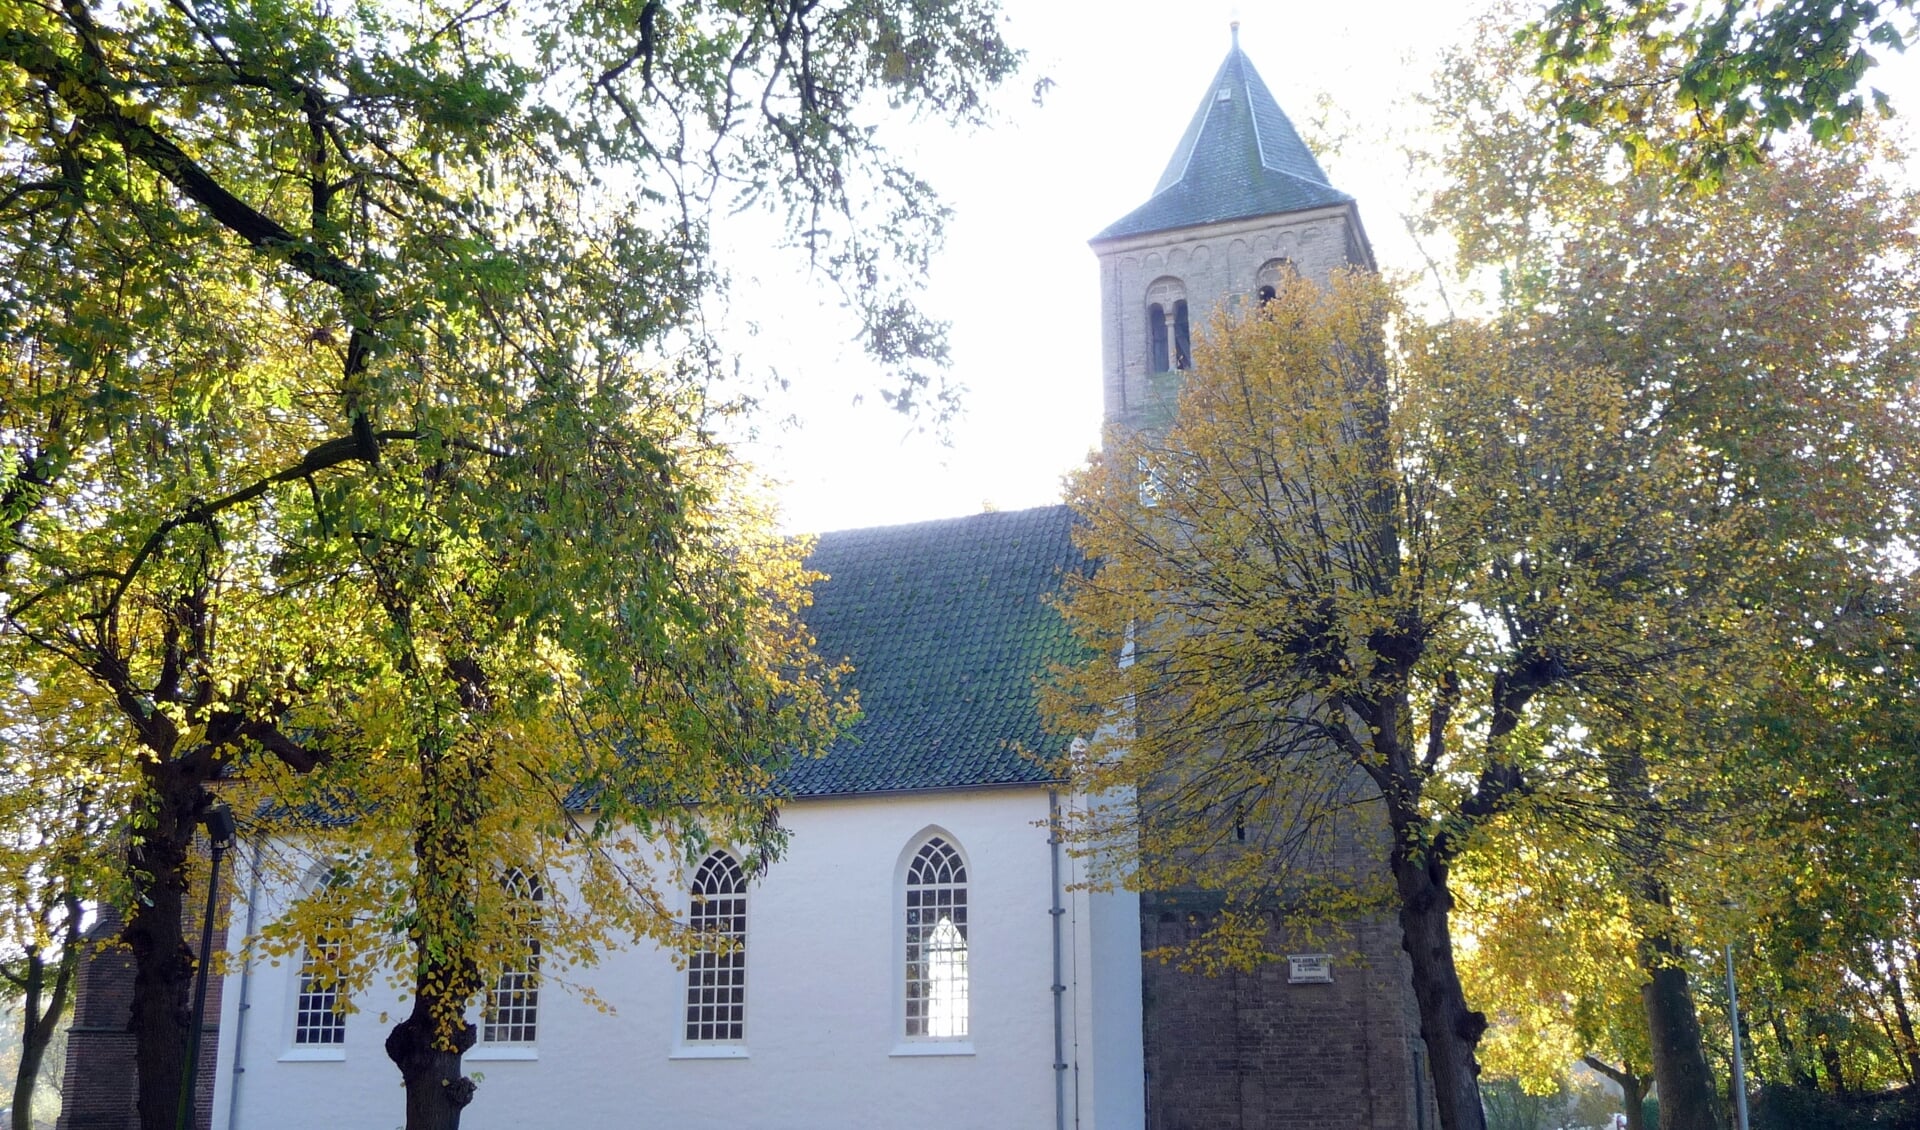 Protestantse kerk Bemmel. 